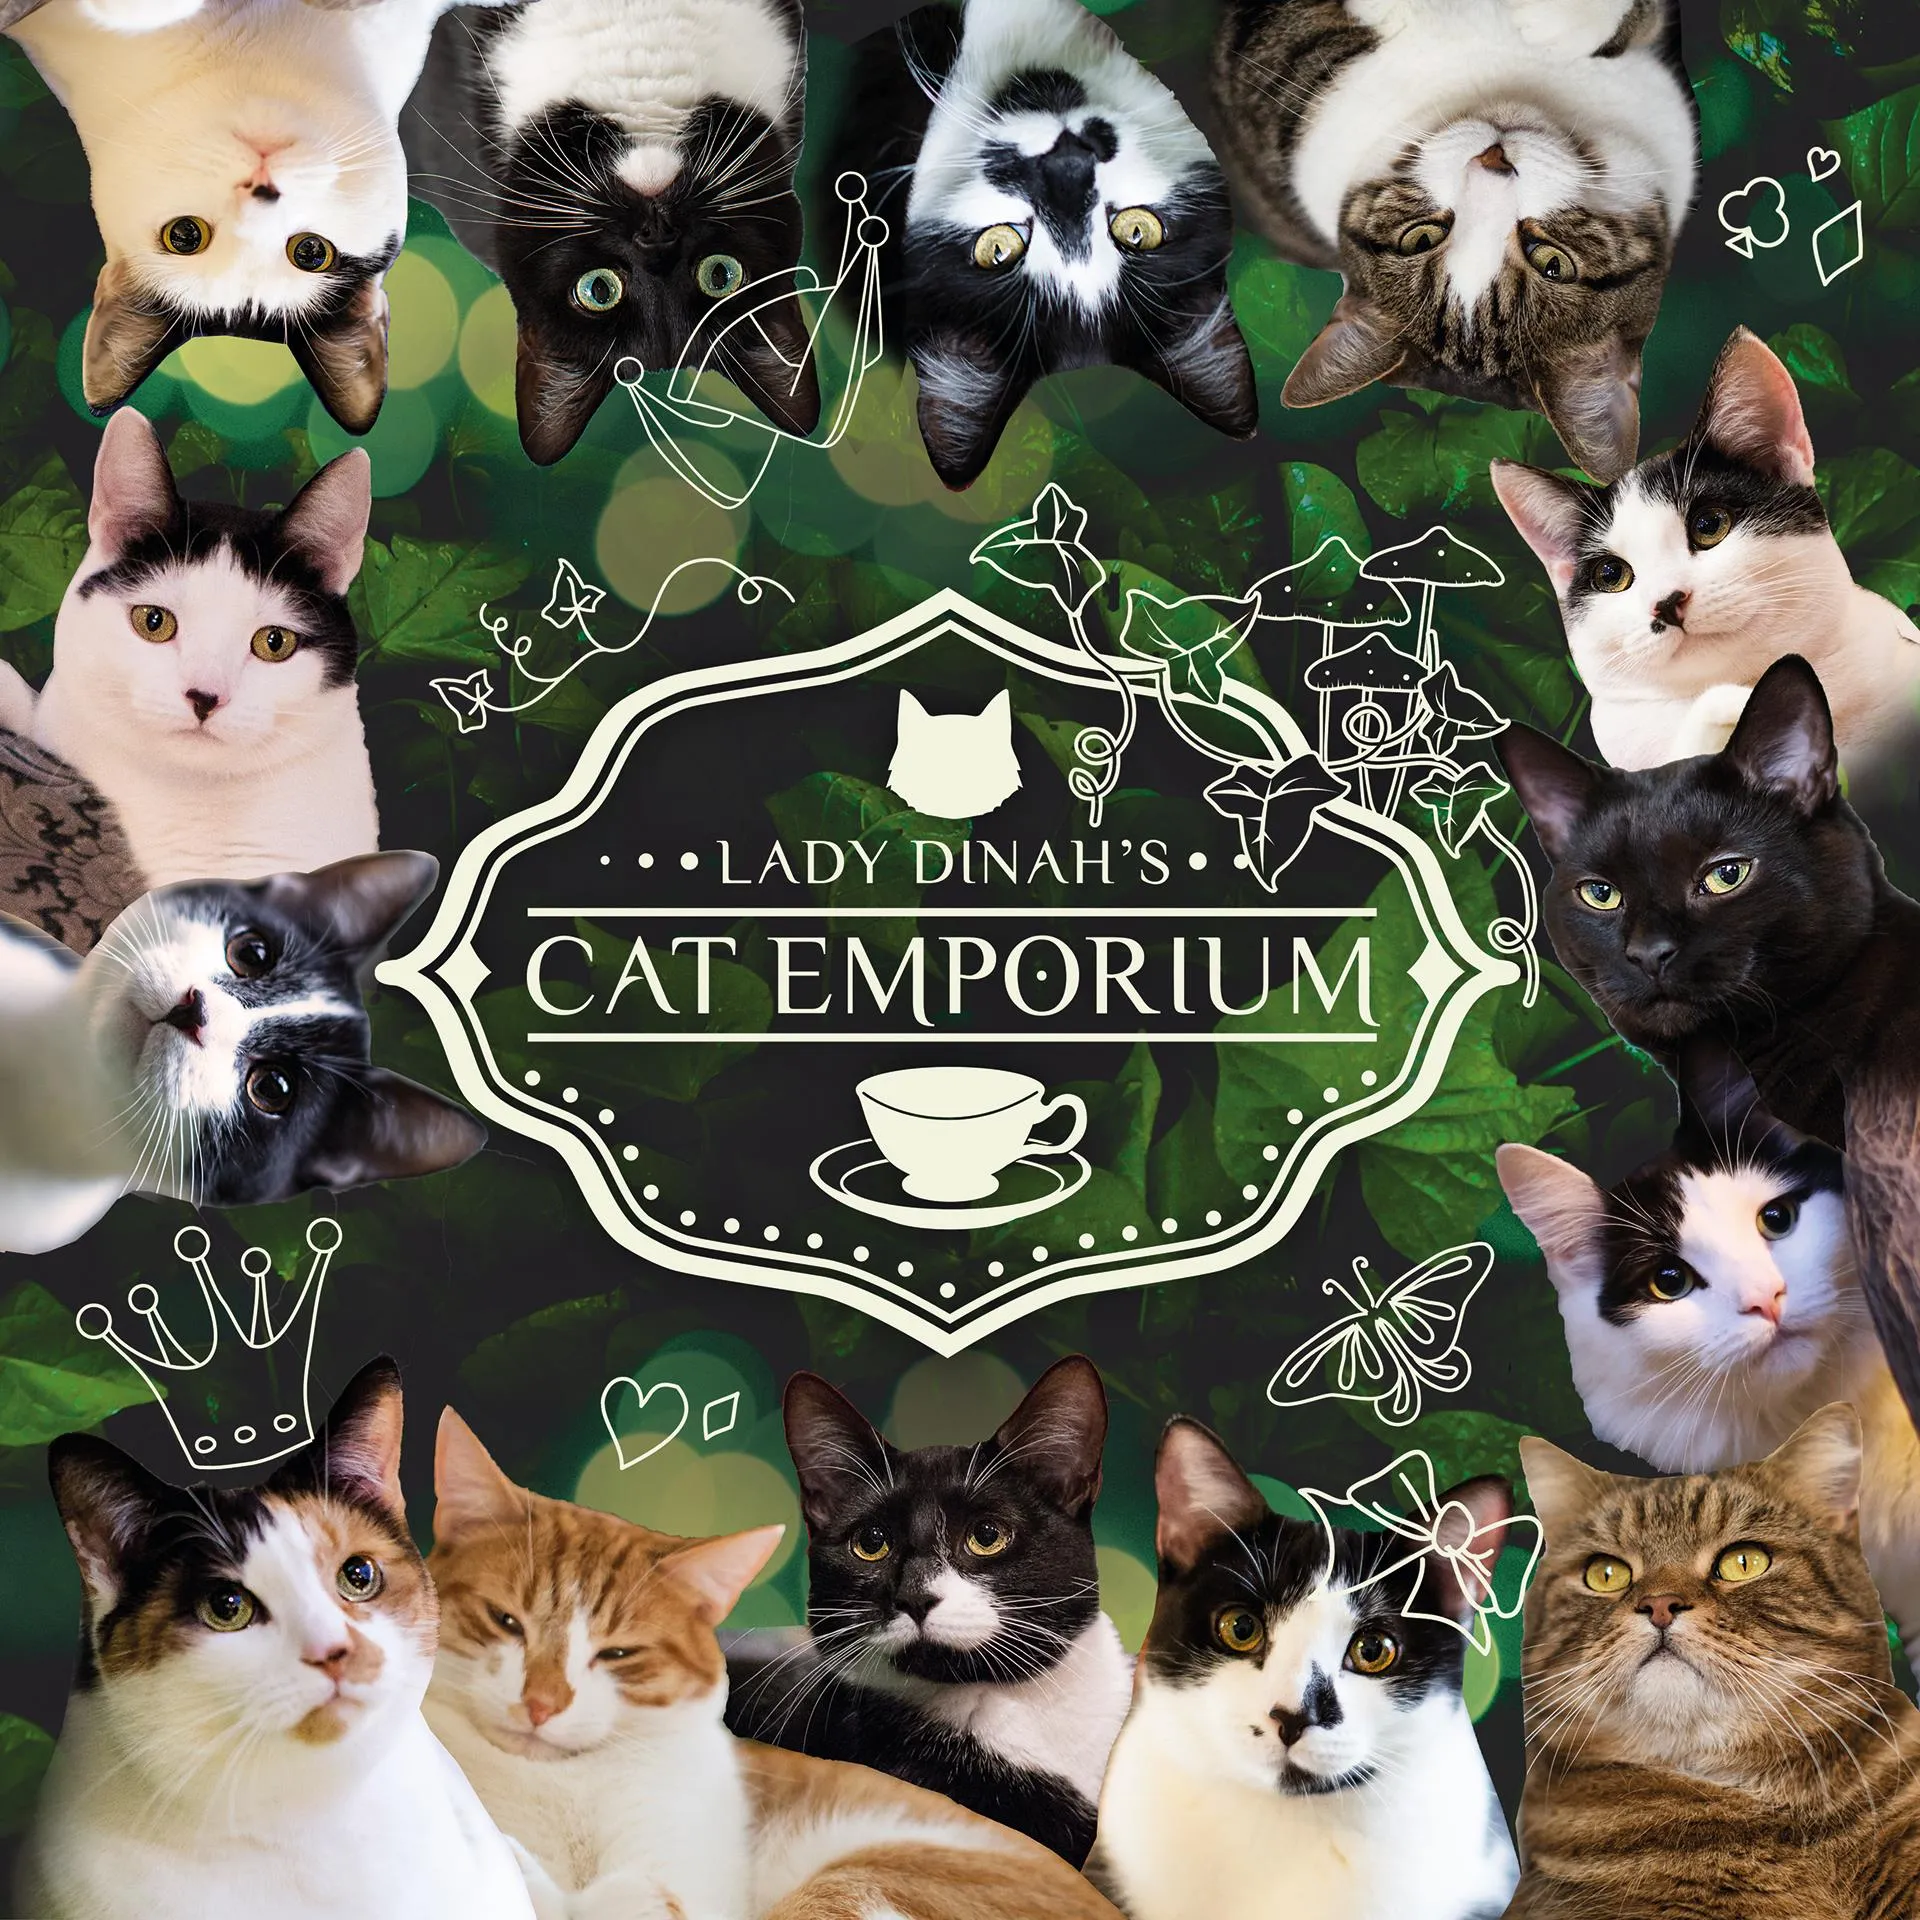  Lady Dinah's Cat Emporium Promo Code